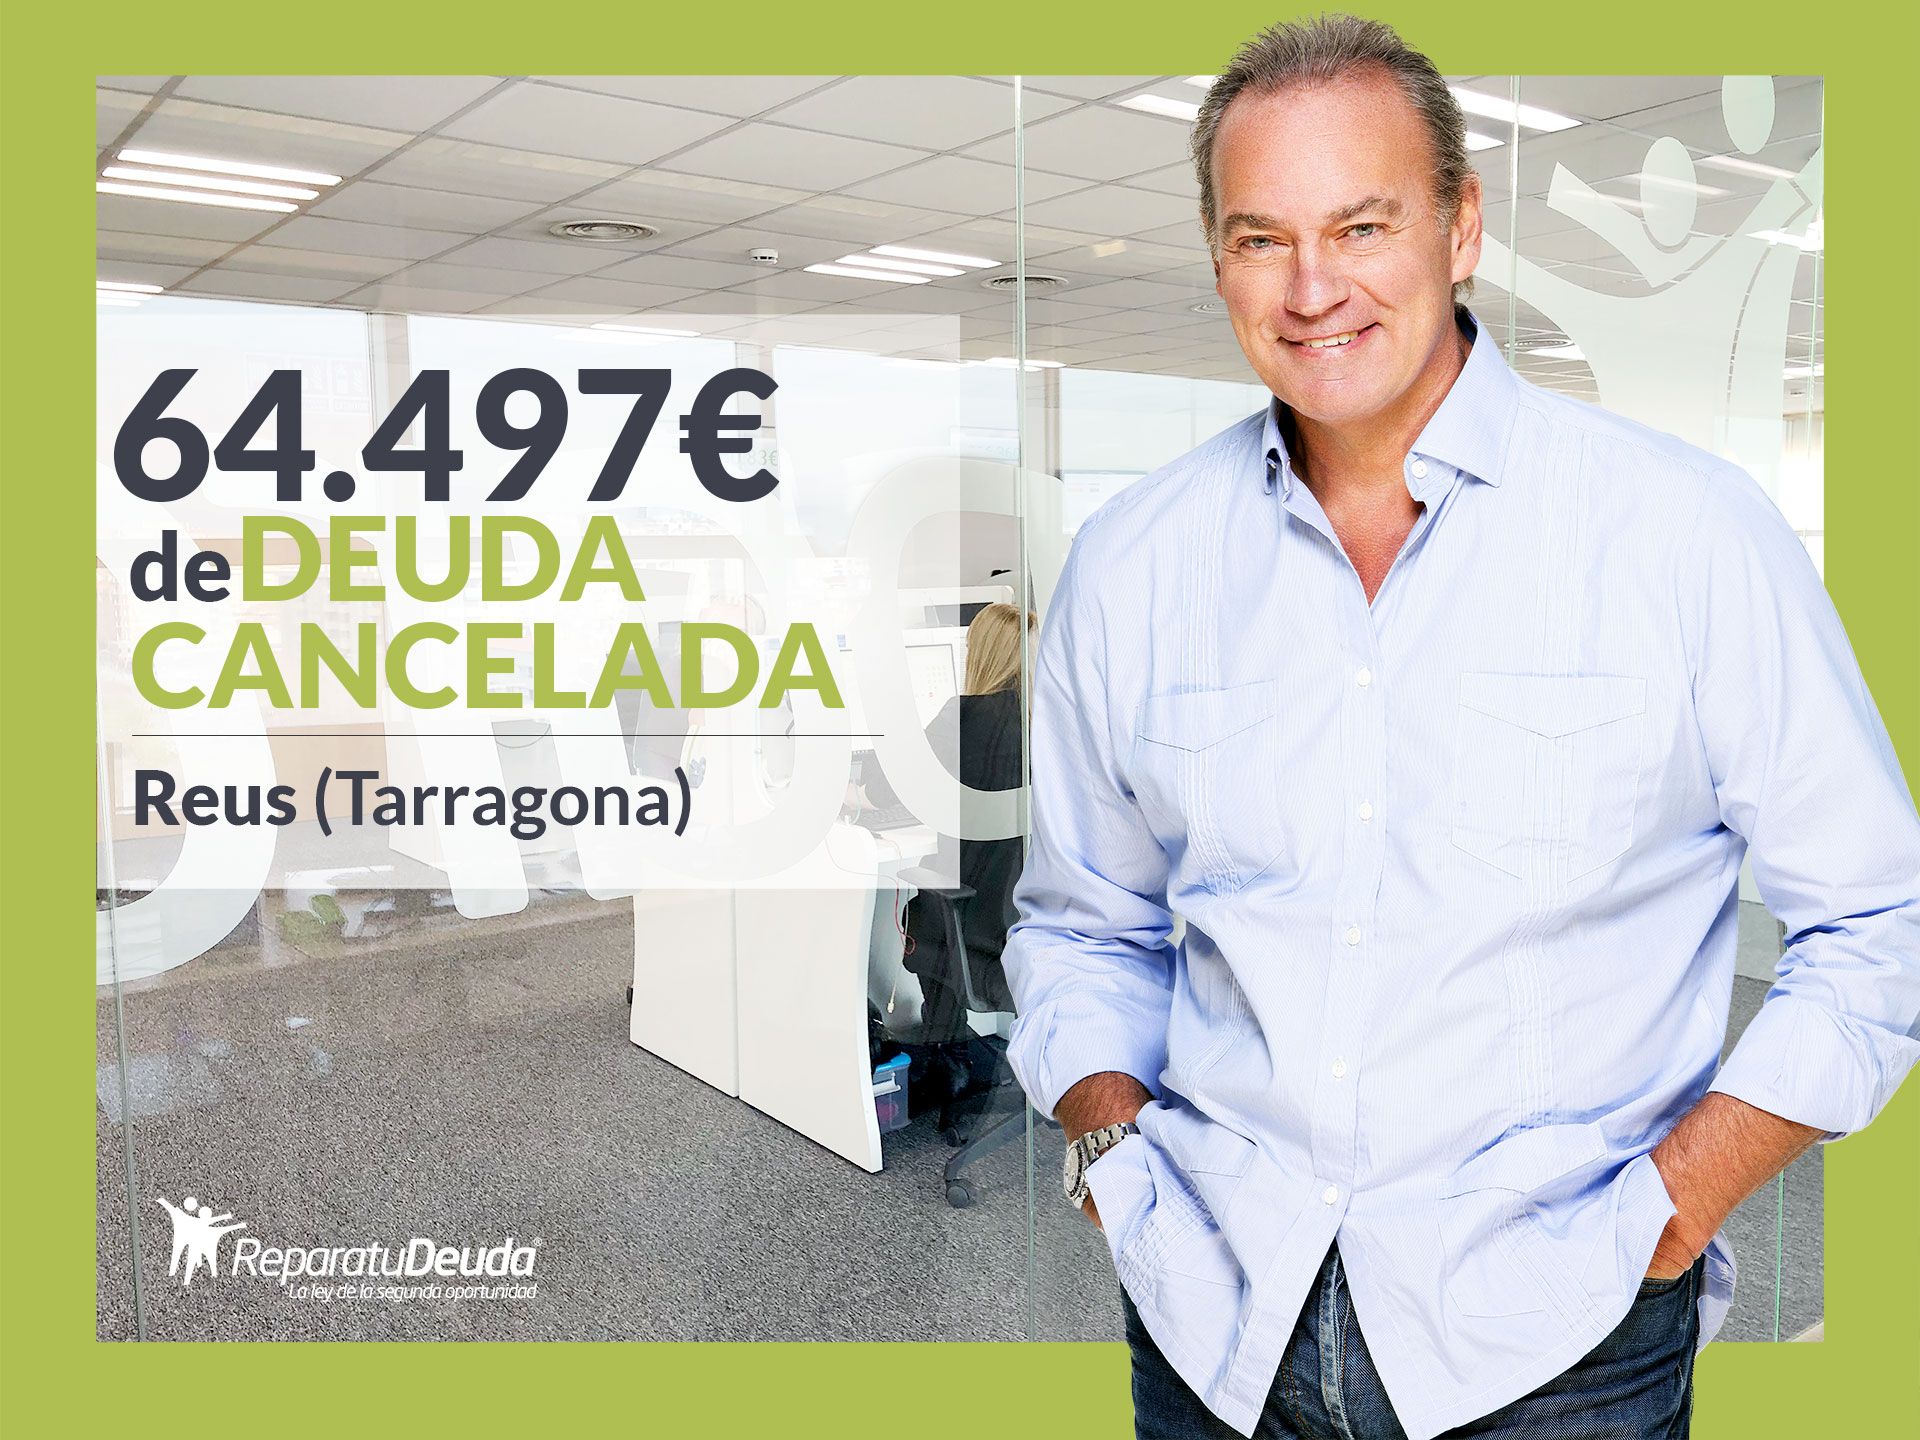 Repara tu Deuda Abogados cancela 64.497? en Reus (Tarragona) gracias a la Ley de Segunda Oportunidad